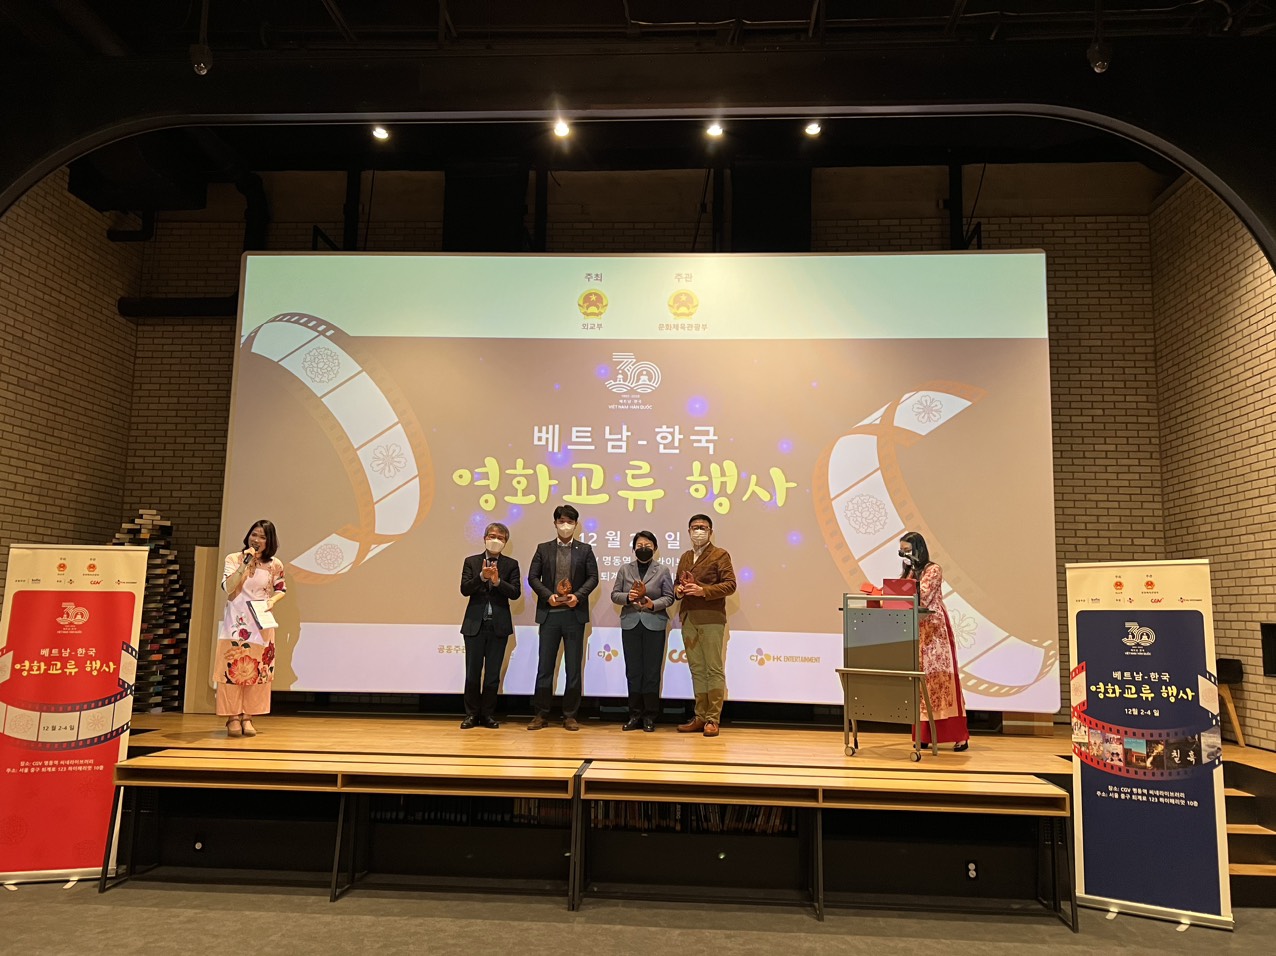 “Chương trình Giao lưu điện ảnh Việt Nam - Hàn Quốc” năm 2022